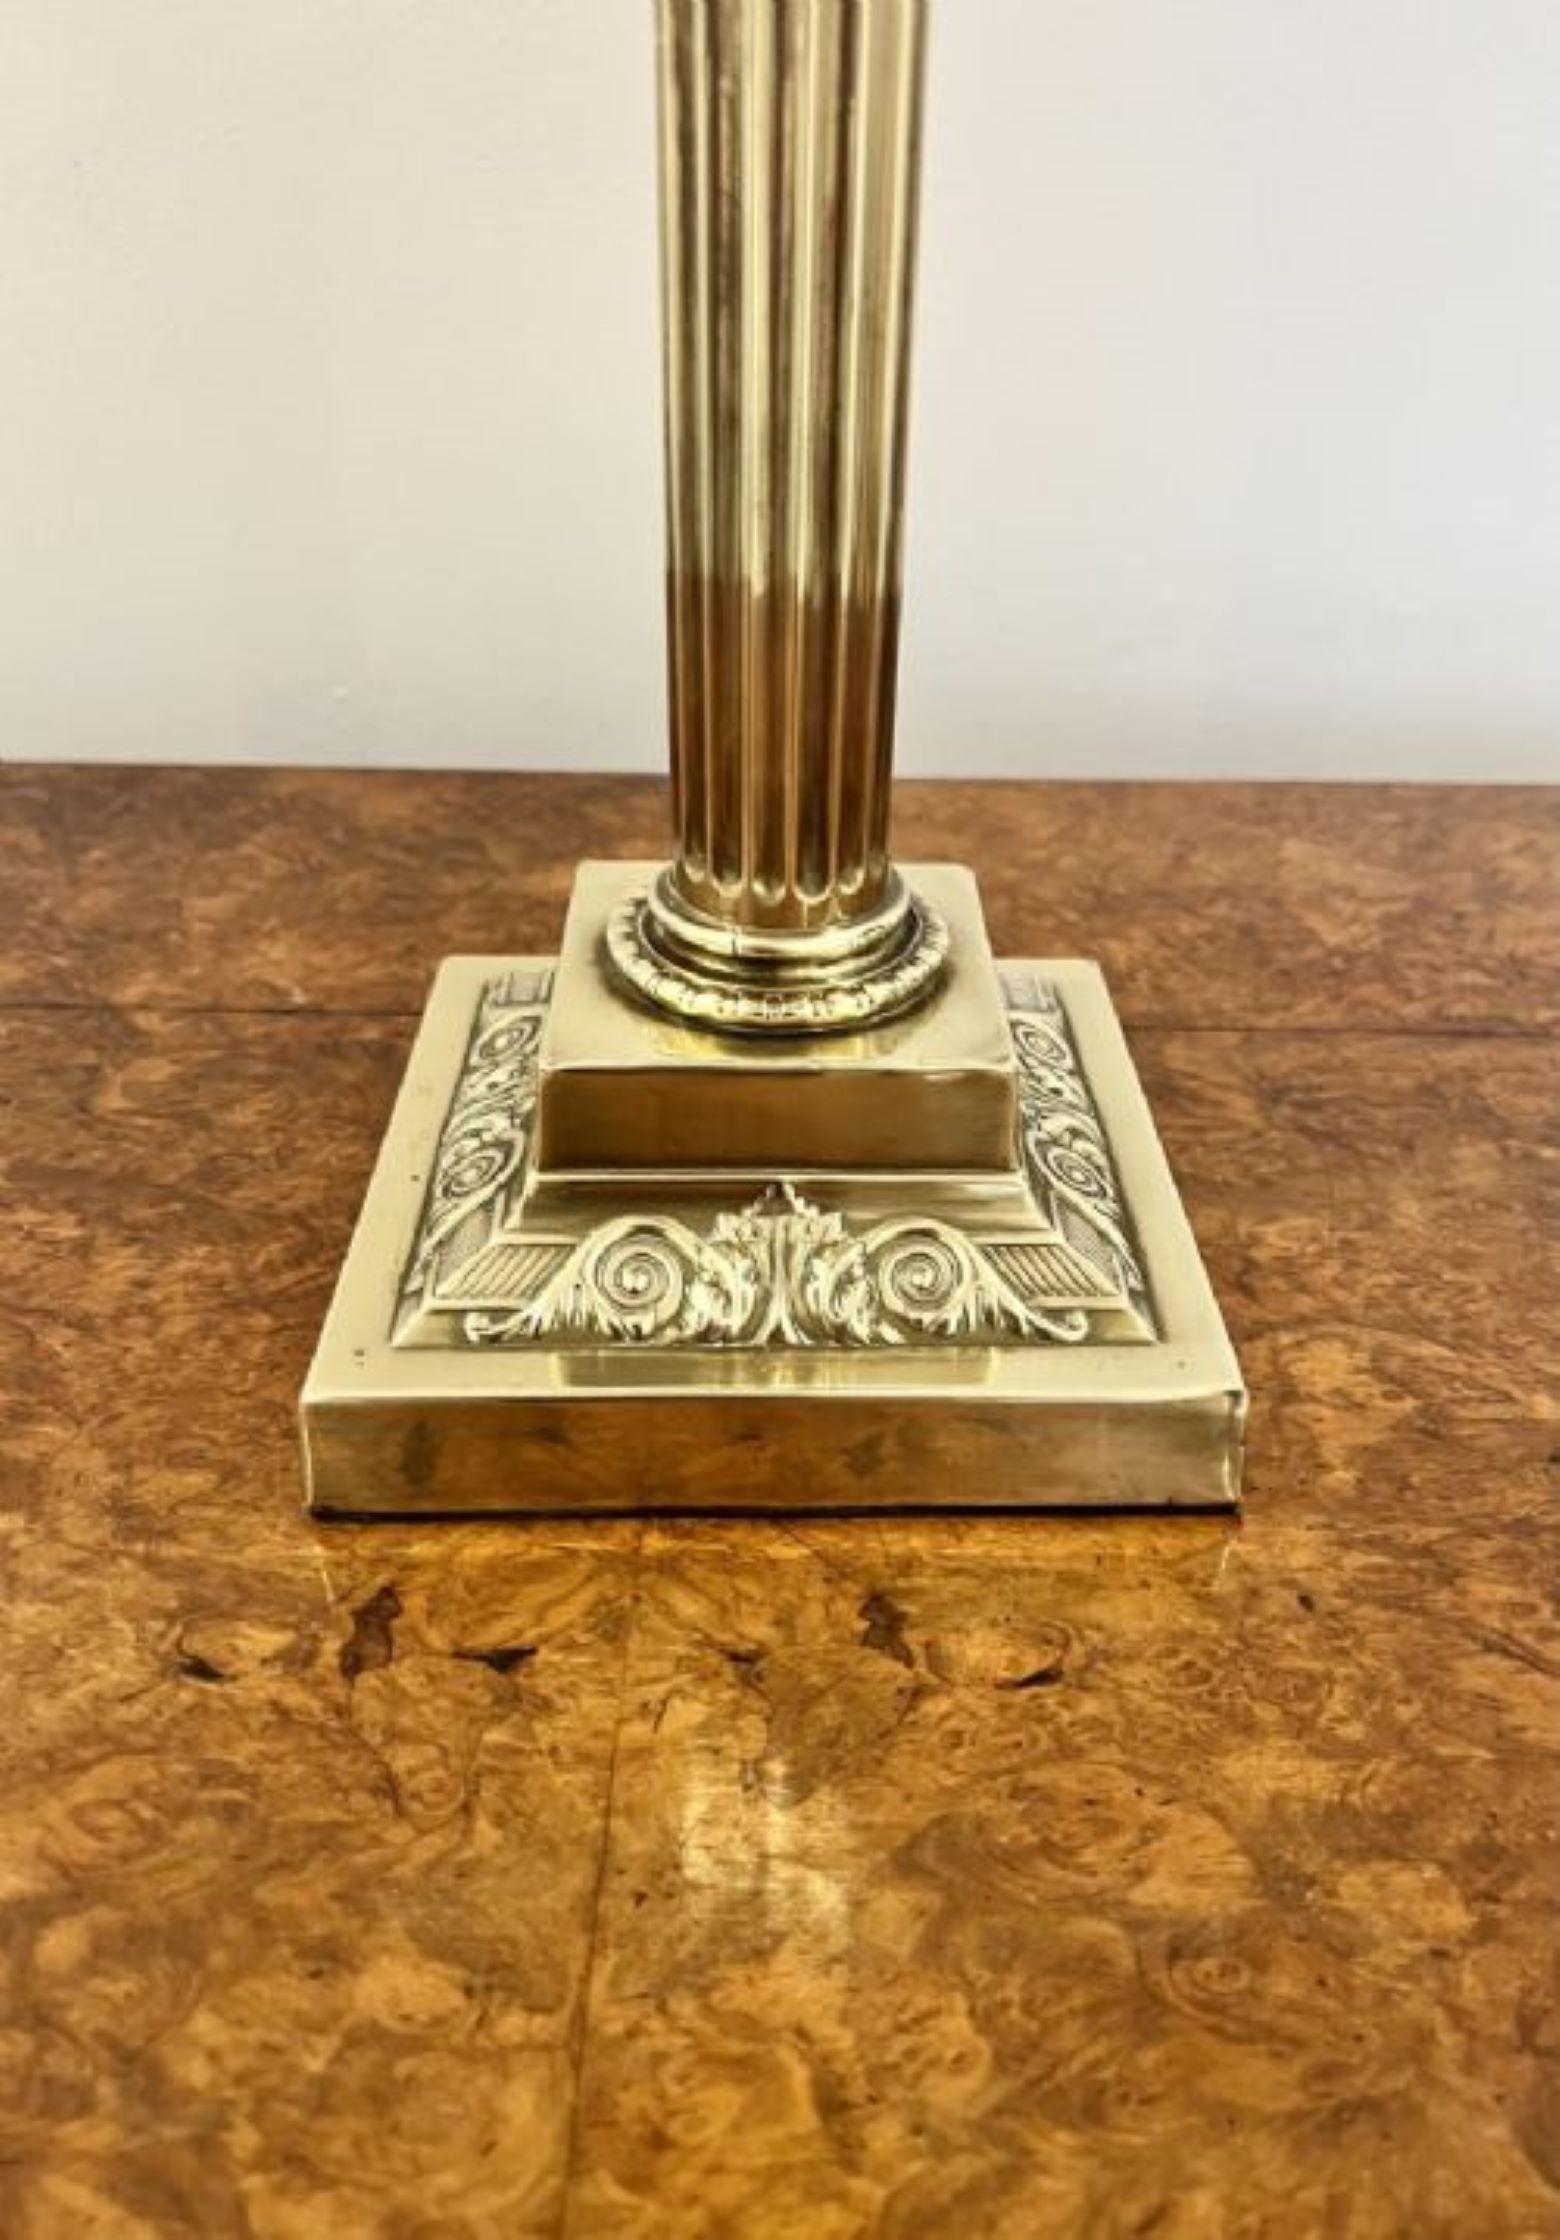 Fantastische Qualität antiken viktorianischen Messing-Öl-Lampe mit einem klaren Glas verziert kugelförmigen Schatten, mit einem Preiselbeere Glas Reservoir auf einem Messing korinthischen Säule unterstützt, auf einem quadratischen abgestuften